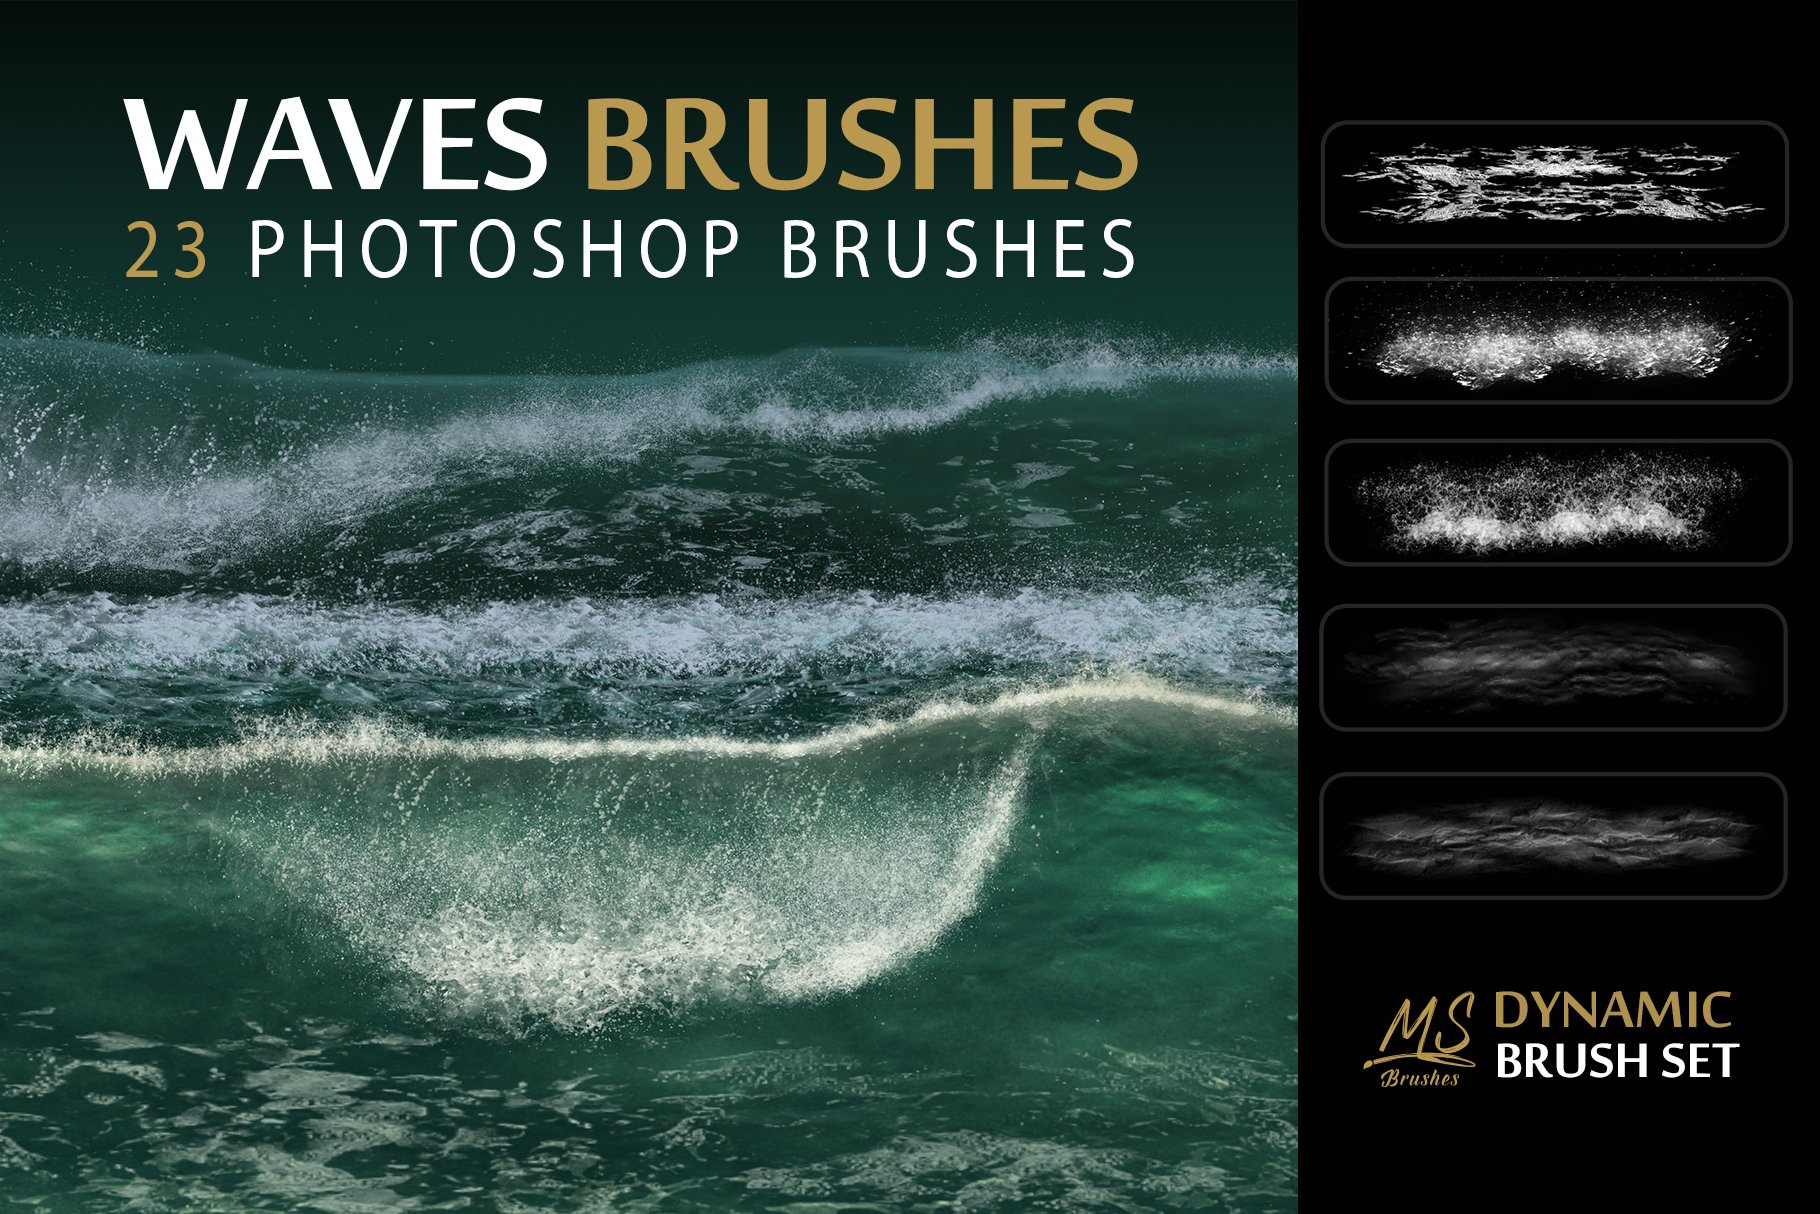 Waves Photoshop Brushescover image.